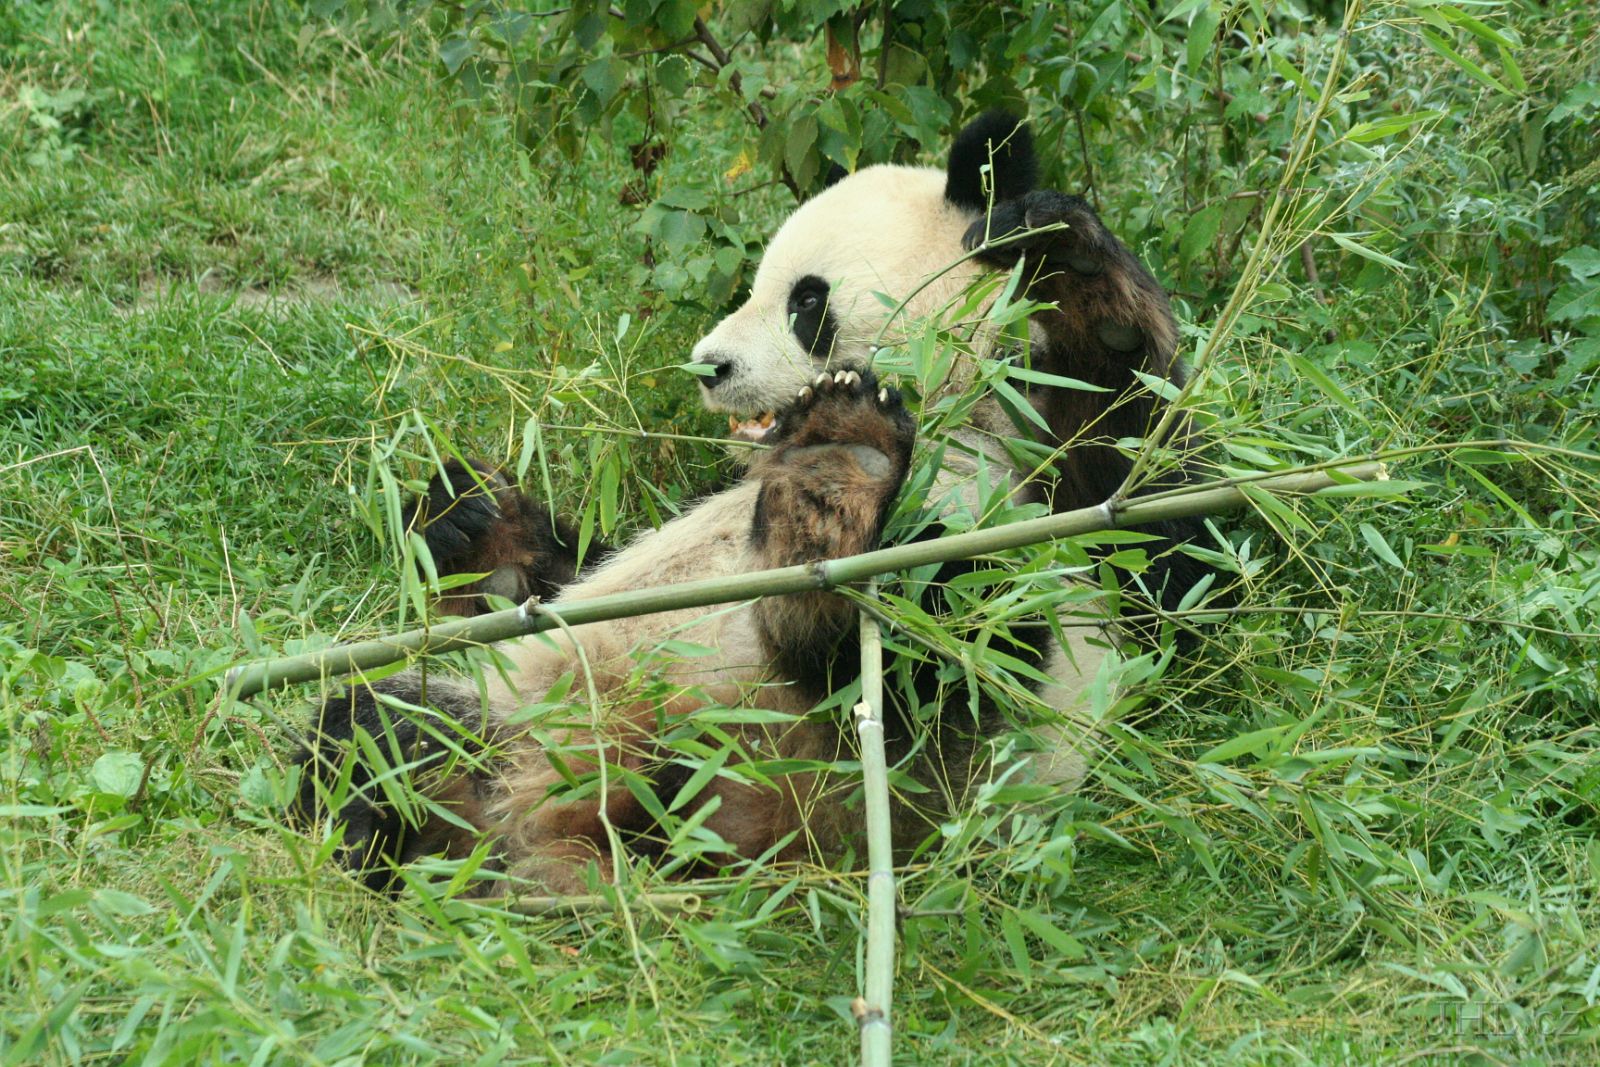 060917c696.JPG - Panda velká (Ailuropoda melanoleuca)